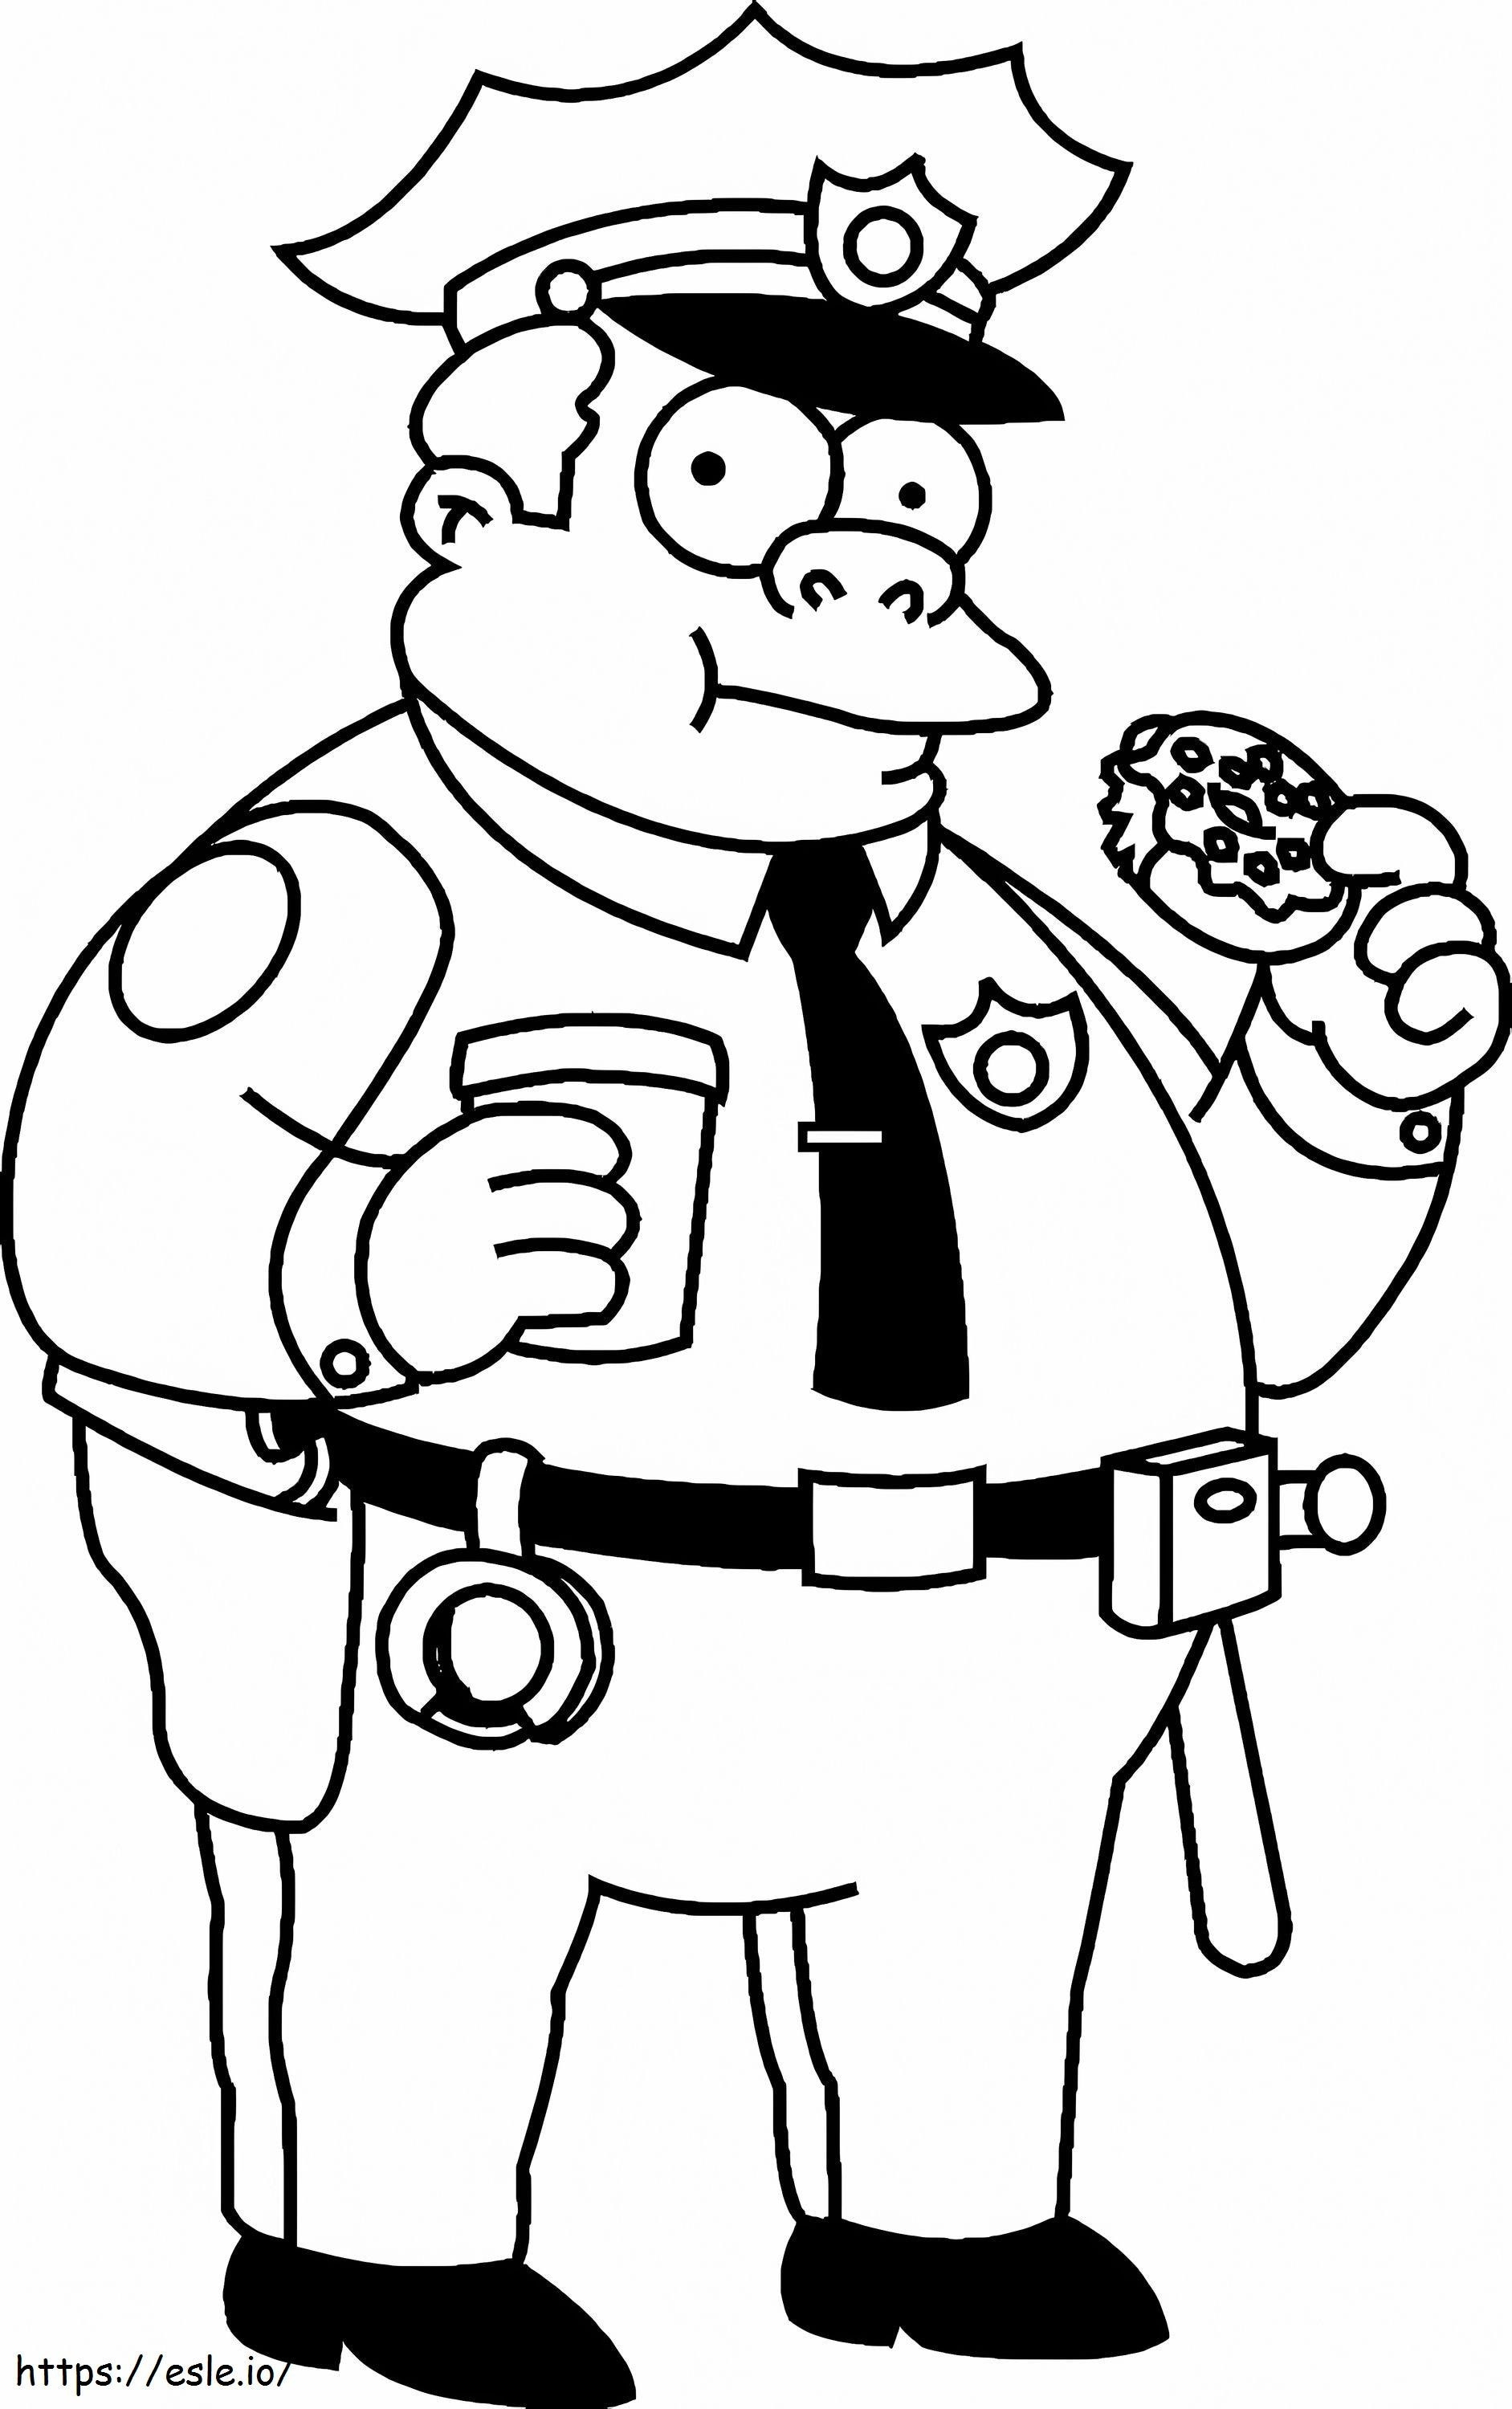 Polizist isst Simpsons Donut ausmalbilder